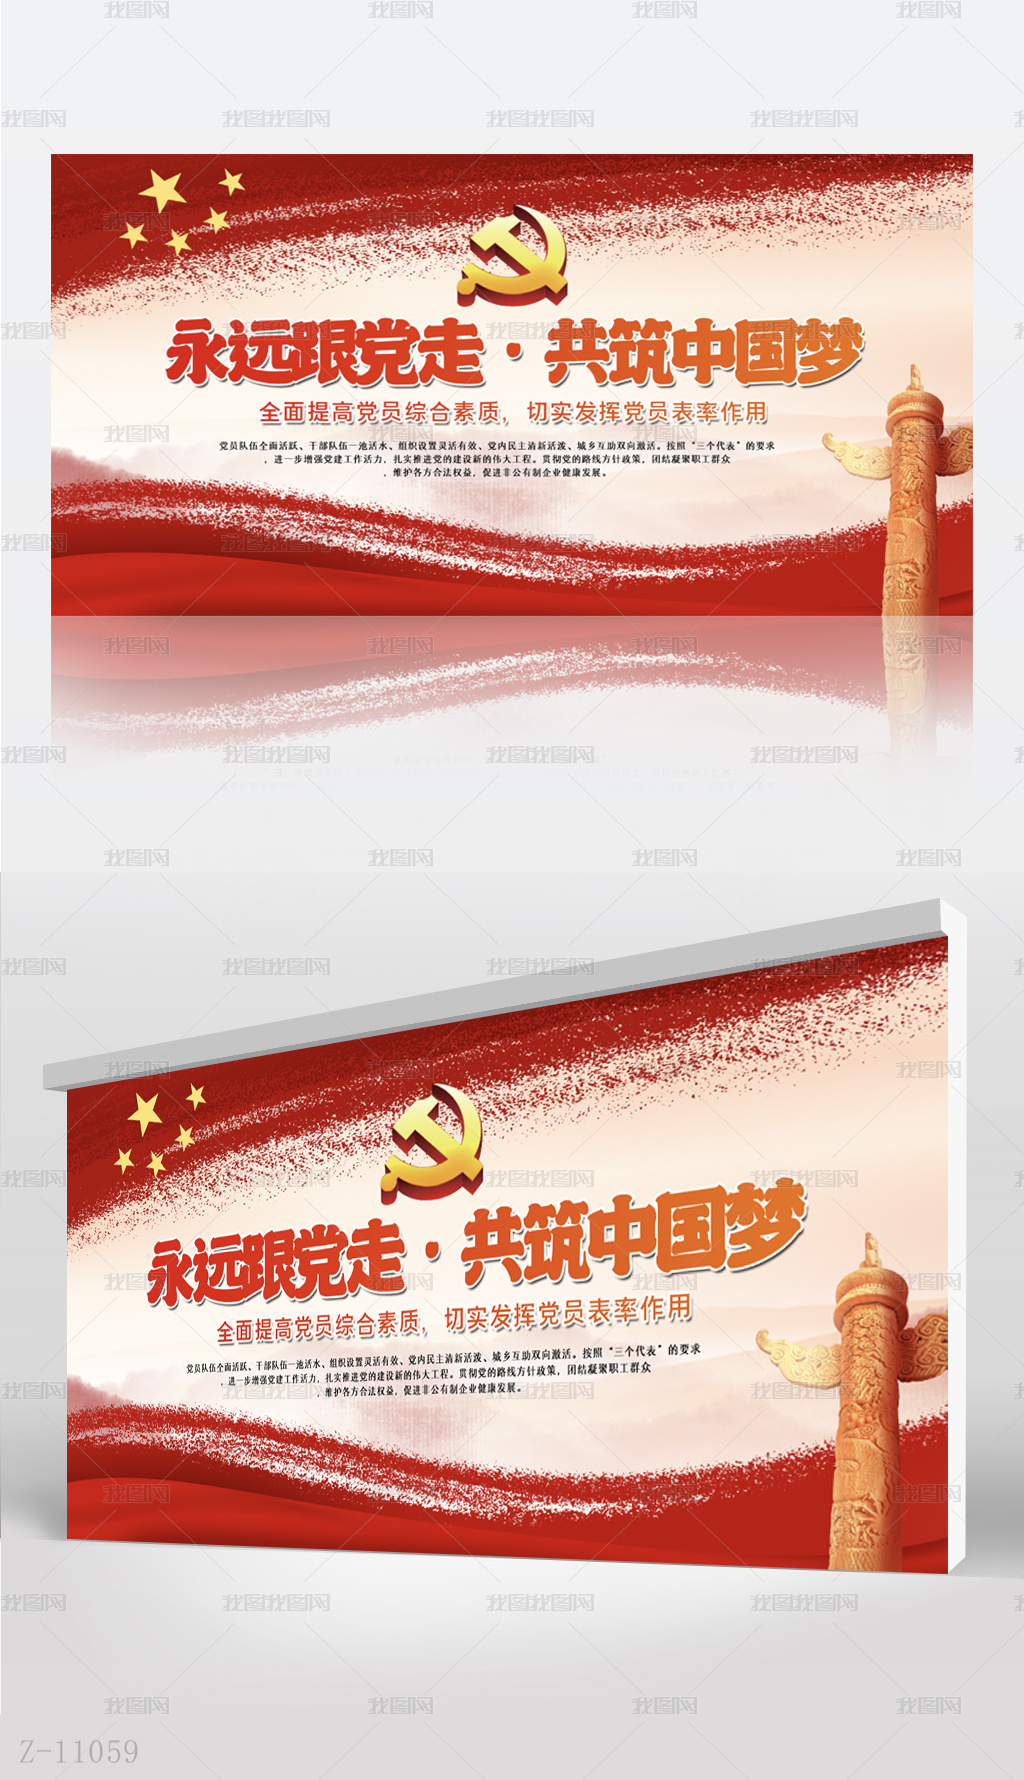 红色党建永远跟党走共筑中国梦背景展板海报设计